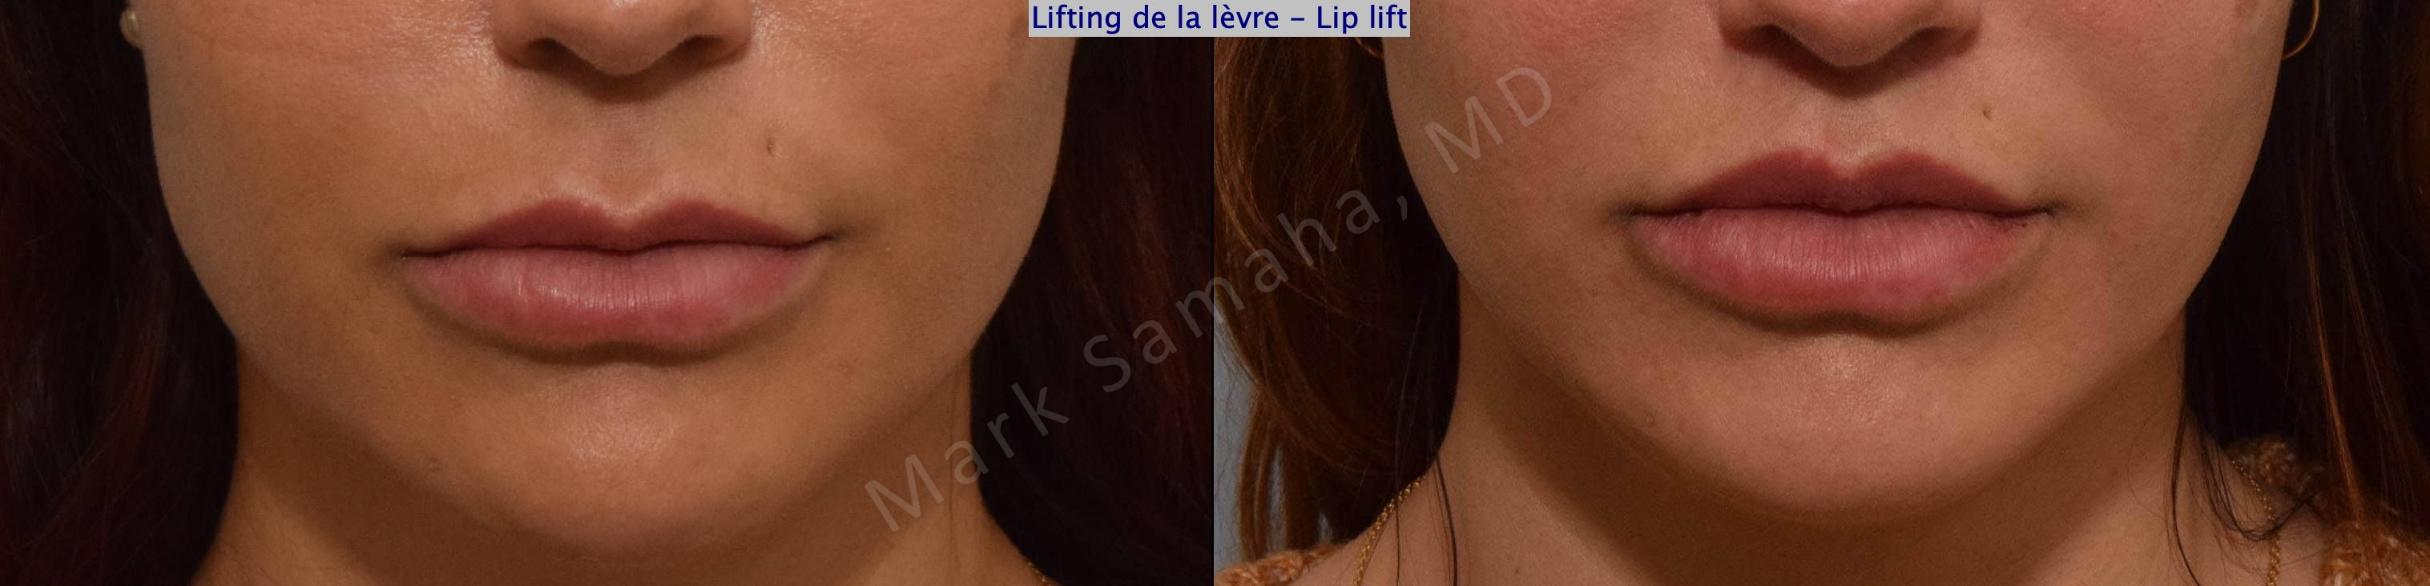 Before & After Lip Lift / Lifting de la lèvre supérieure Case 171 Front View in Mount Royal, QC